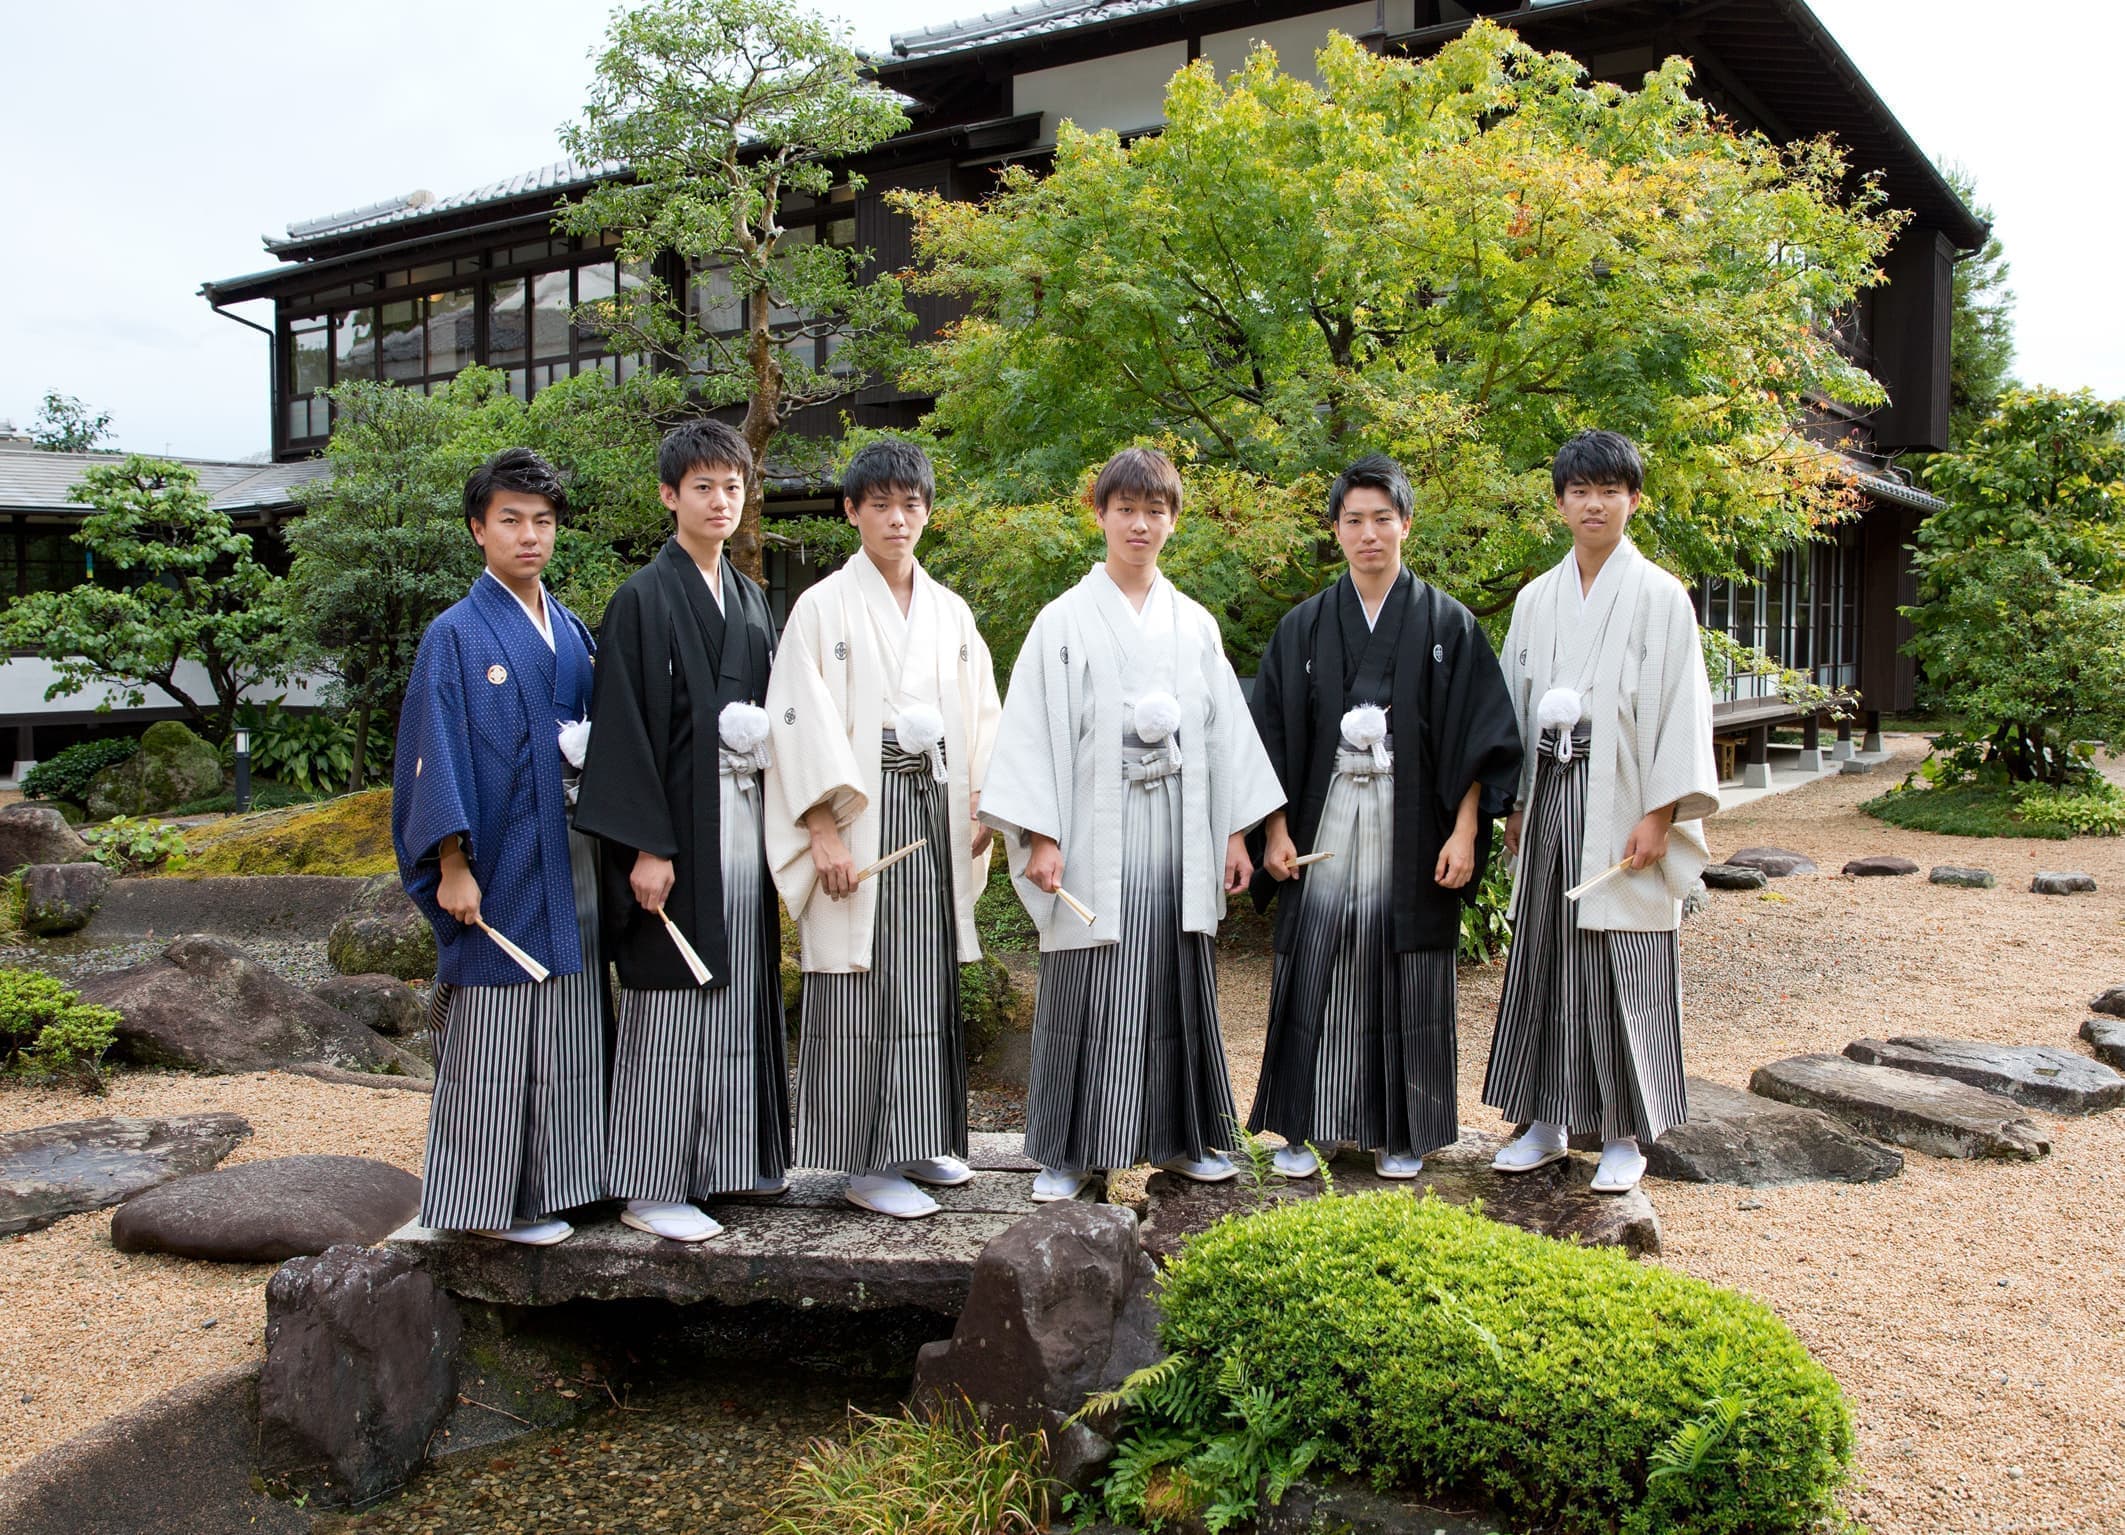 袴姿の6人男性